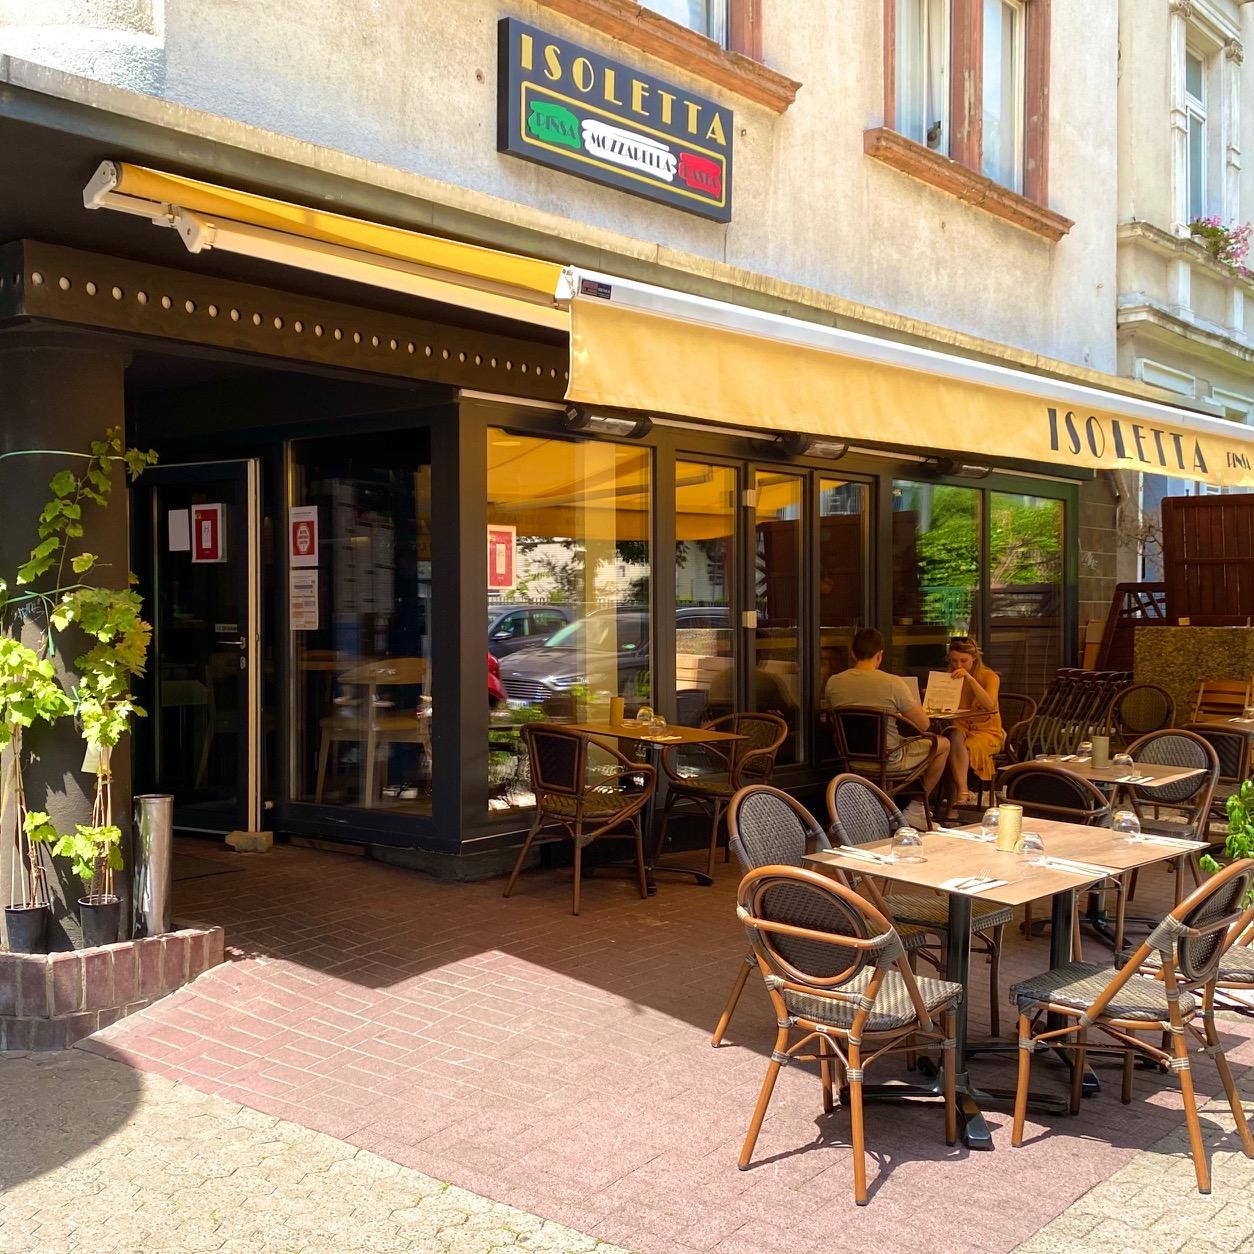 Restaurant "Isoletta | Bergerstraße" in Frankfurt am Main